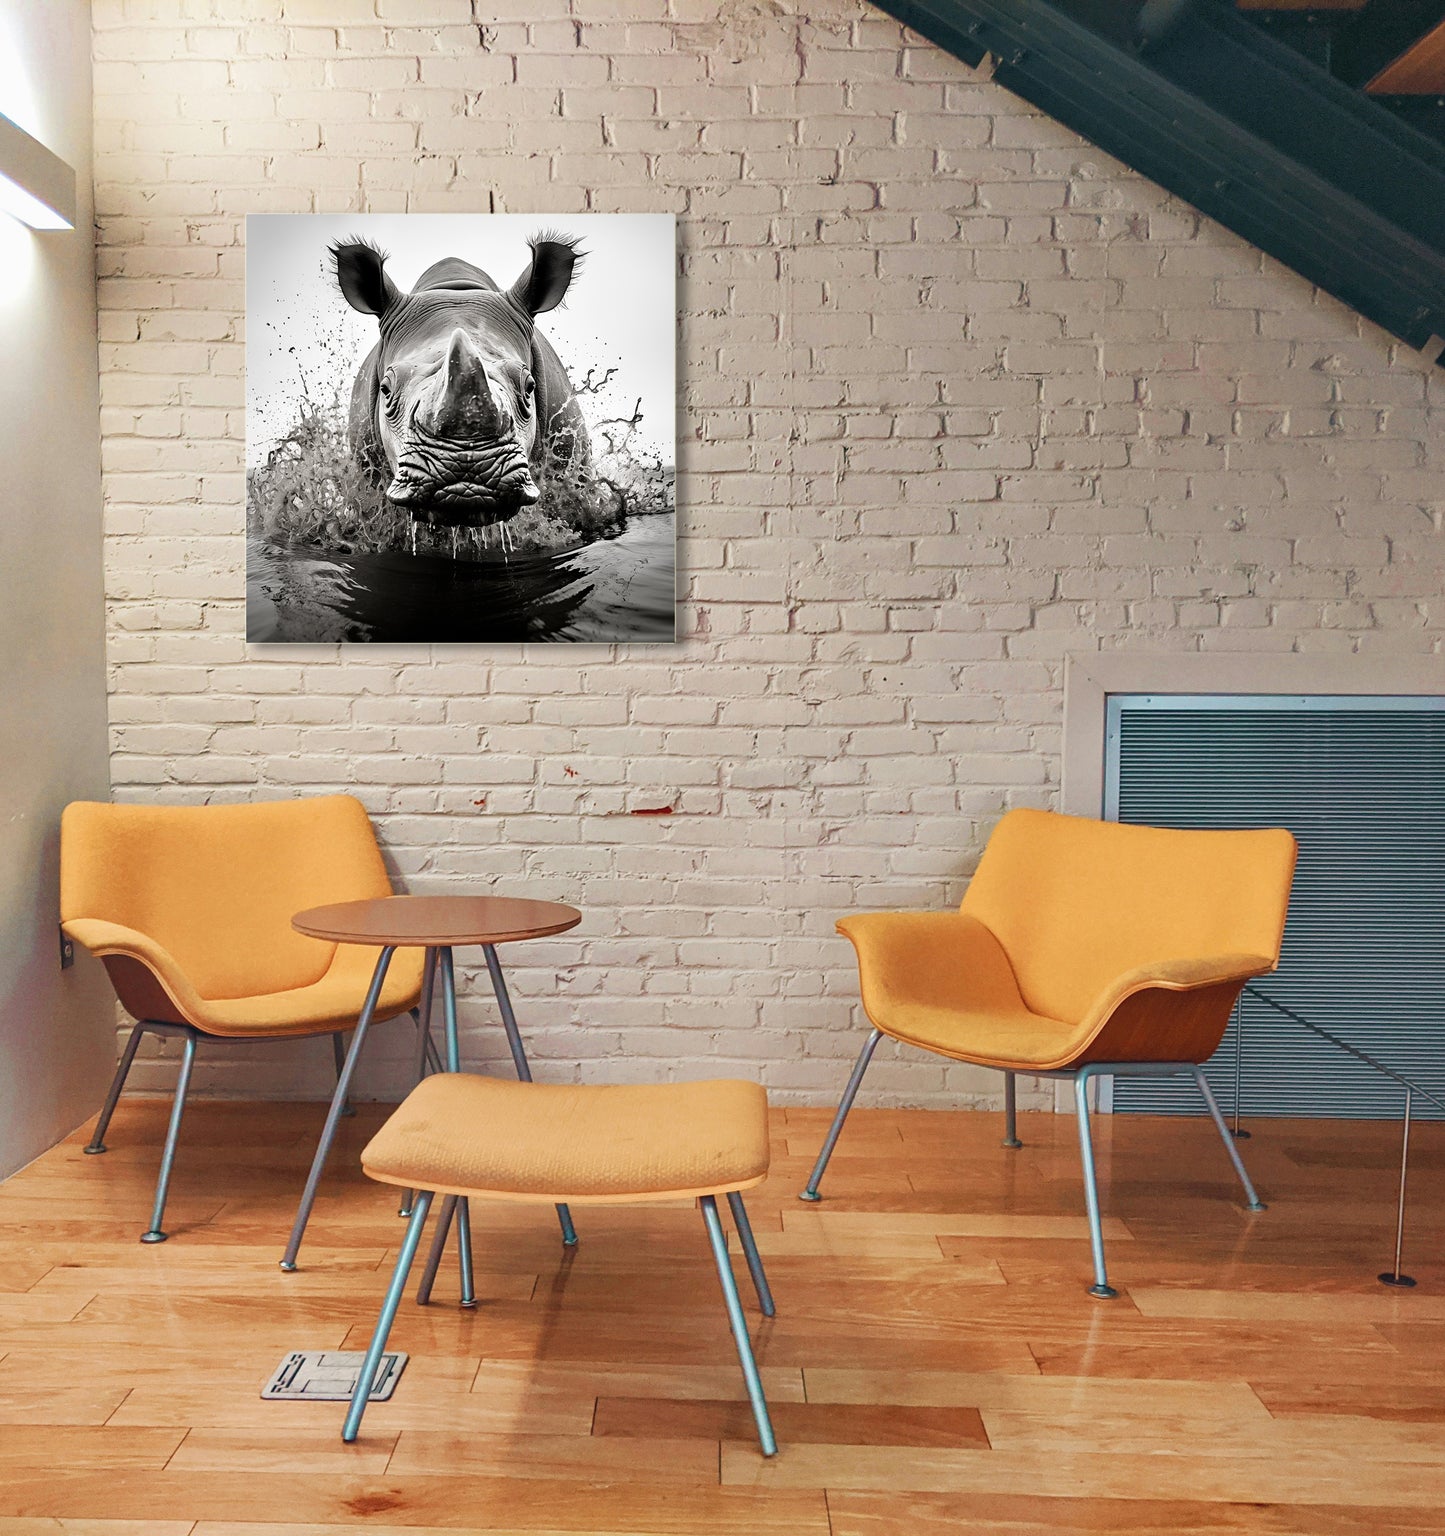 Disegno bianco e nero - Disegno rinoceronte in acqua in stile Salgado | Effetto lucido